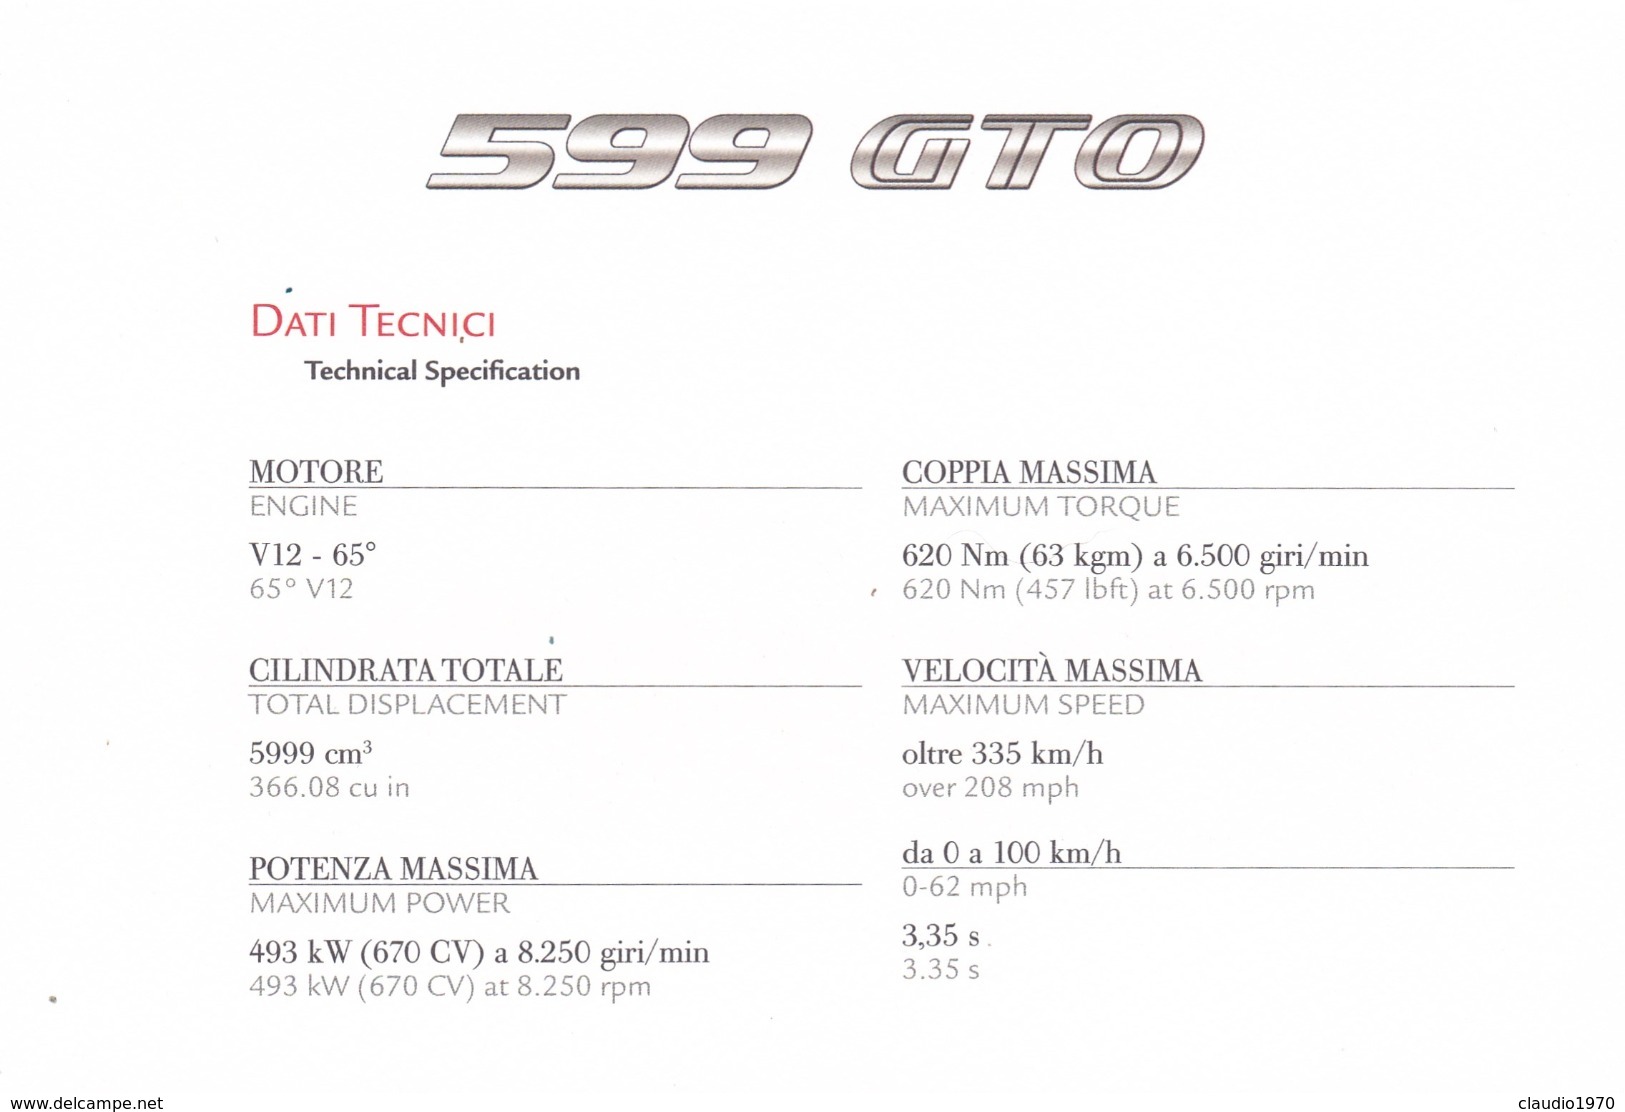 FERRARI 599 GTO - SCHEDA TECNICA - TECHNICAL SPECIFICATIONS - BEIJING APRIL 22 - 2010 - Automobile - F1